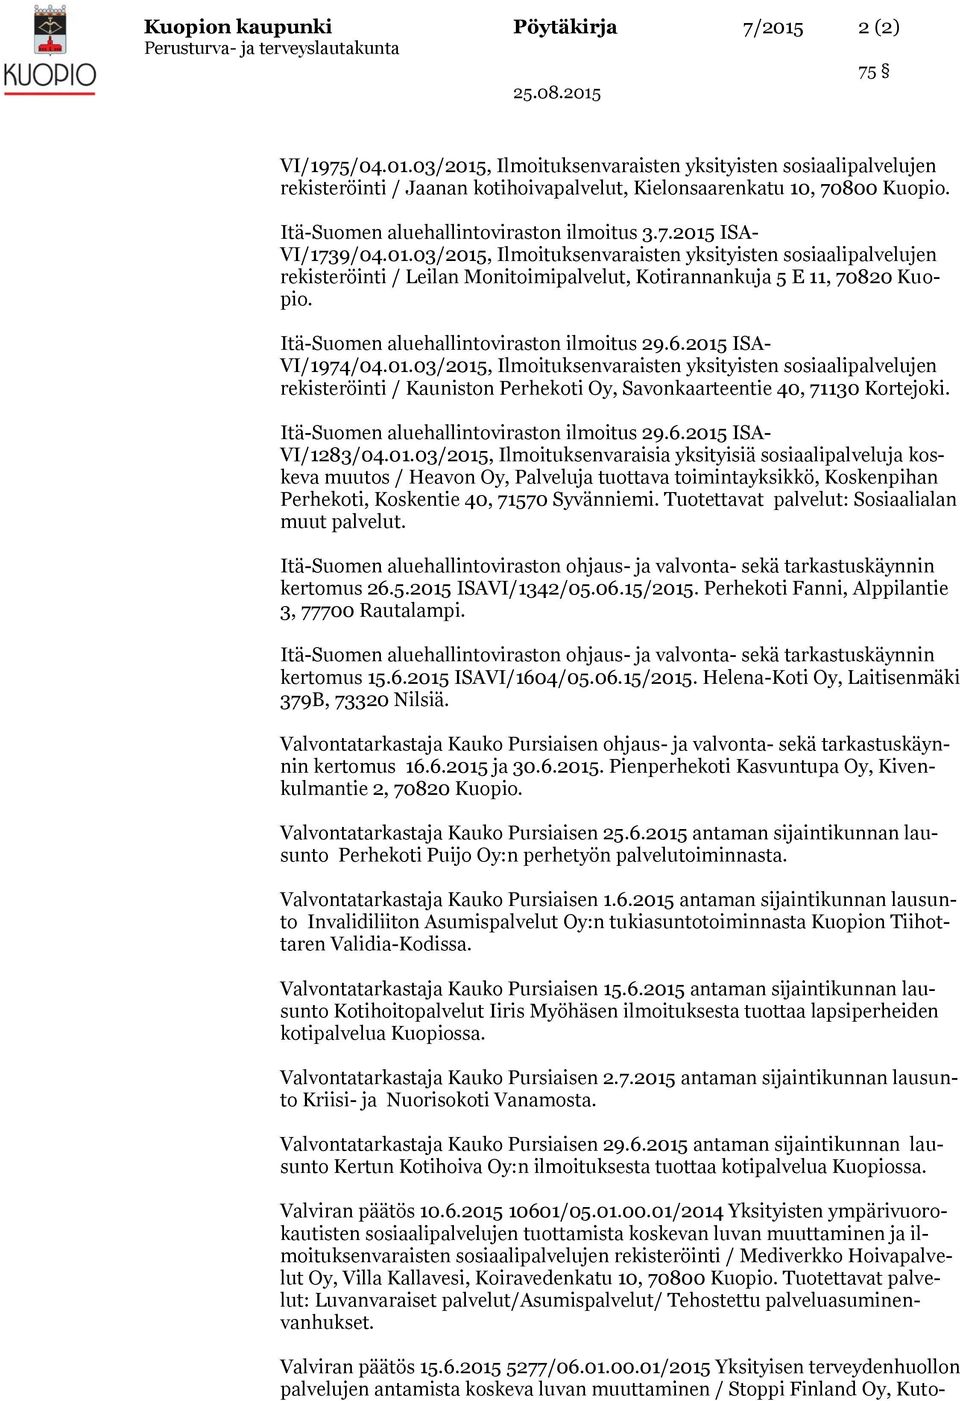 Itä-Suomen aluehallintoviraston ilmoitus 29.6.2015 ISA- VI/1974/04.01.03/2015, Ilmoituksenvaraisten yksityisten sosiaalipalvelujen rekisteröinti / Kauniston Perhekoti Oy, Savonkaarteentie 40, 71130 Kortejoki.